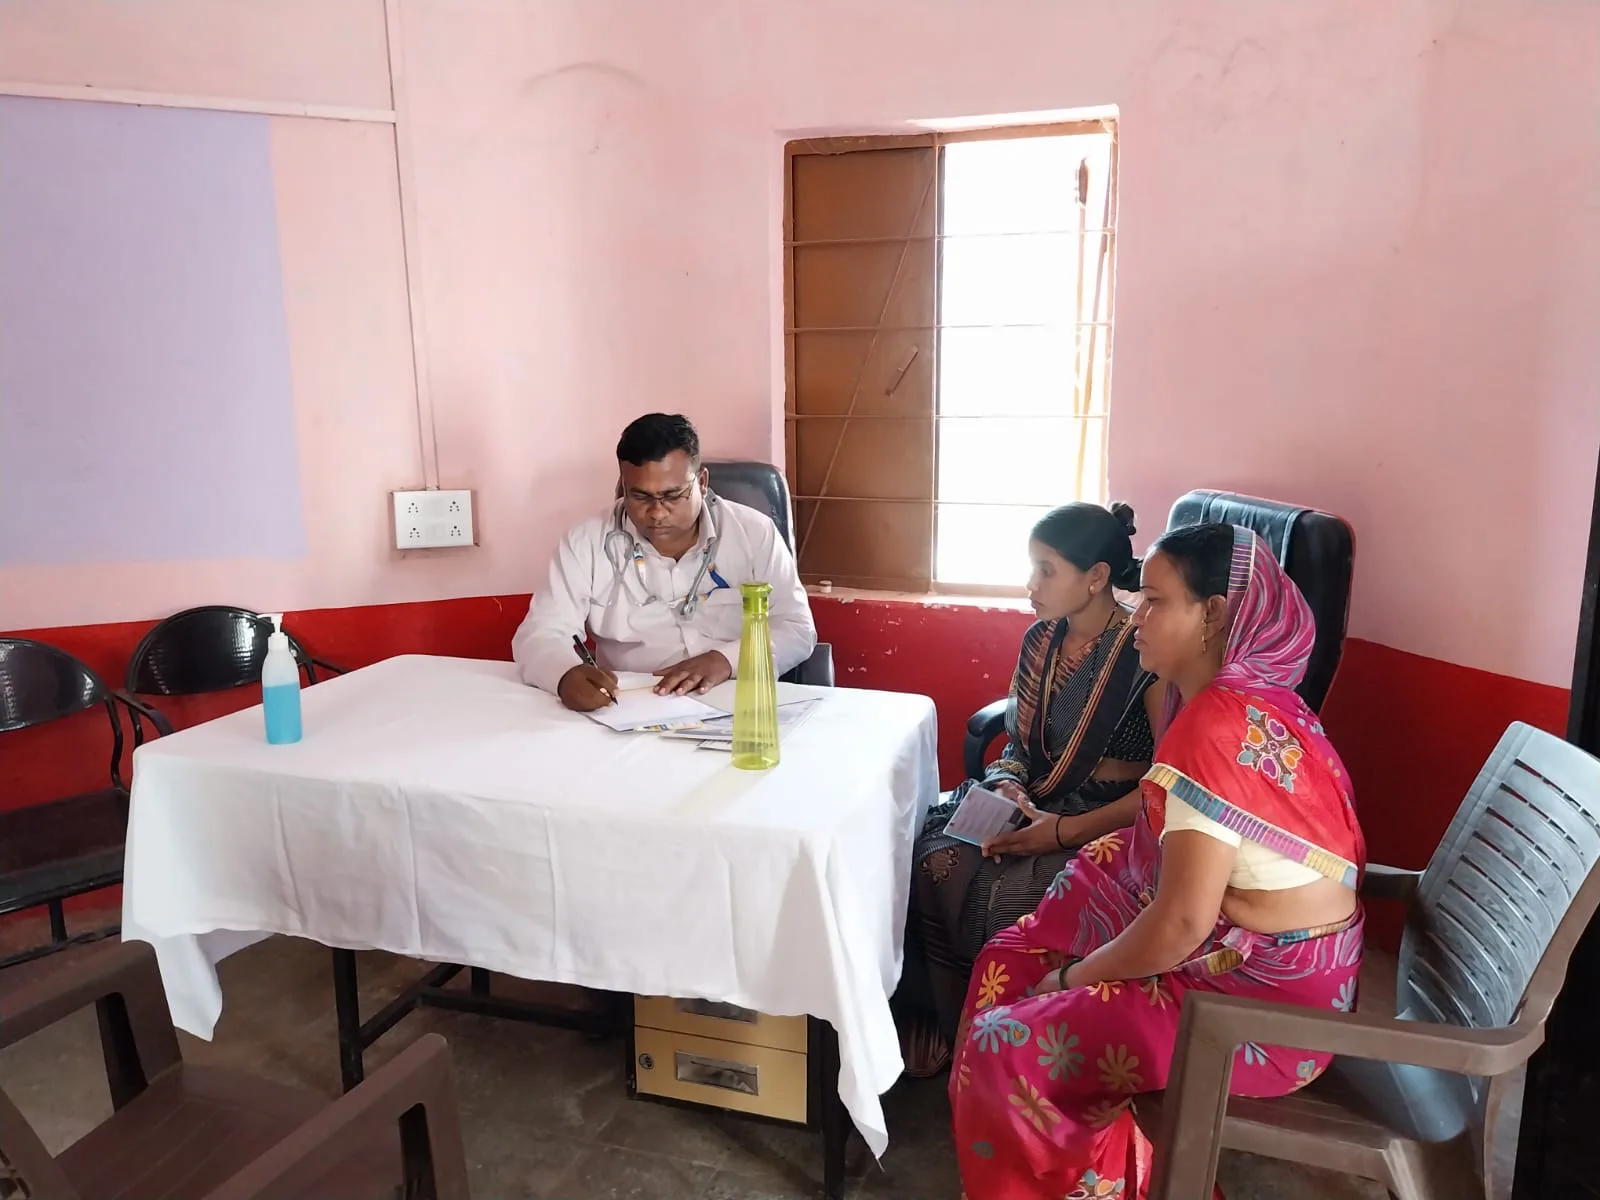 आल इज़ वेल हॉस्पिटल बुरहानपुर द्वारा ग्राम गुलाई में आयोजित किया गया निःशुल्क स्वास्थ्य शिविर | New India Times